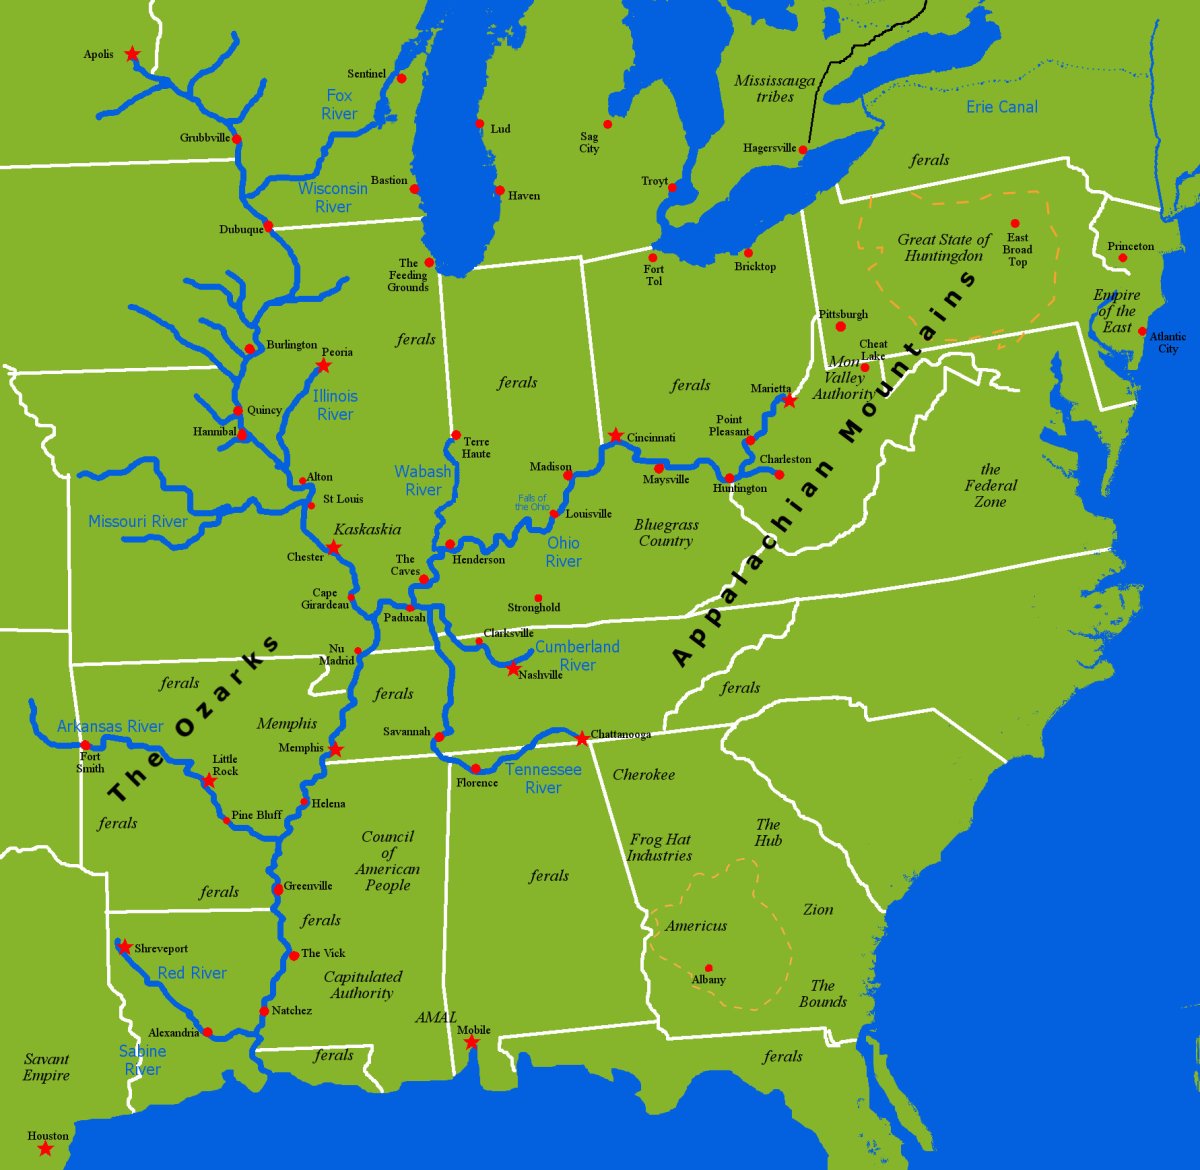 Исток реки Миссисипи на карте